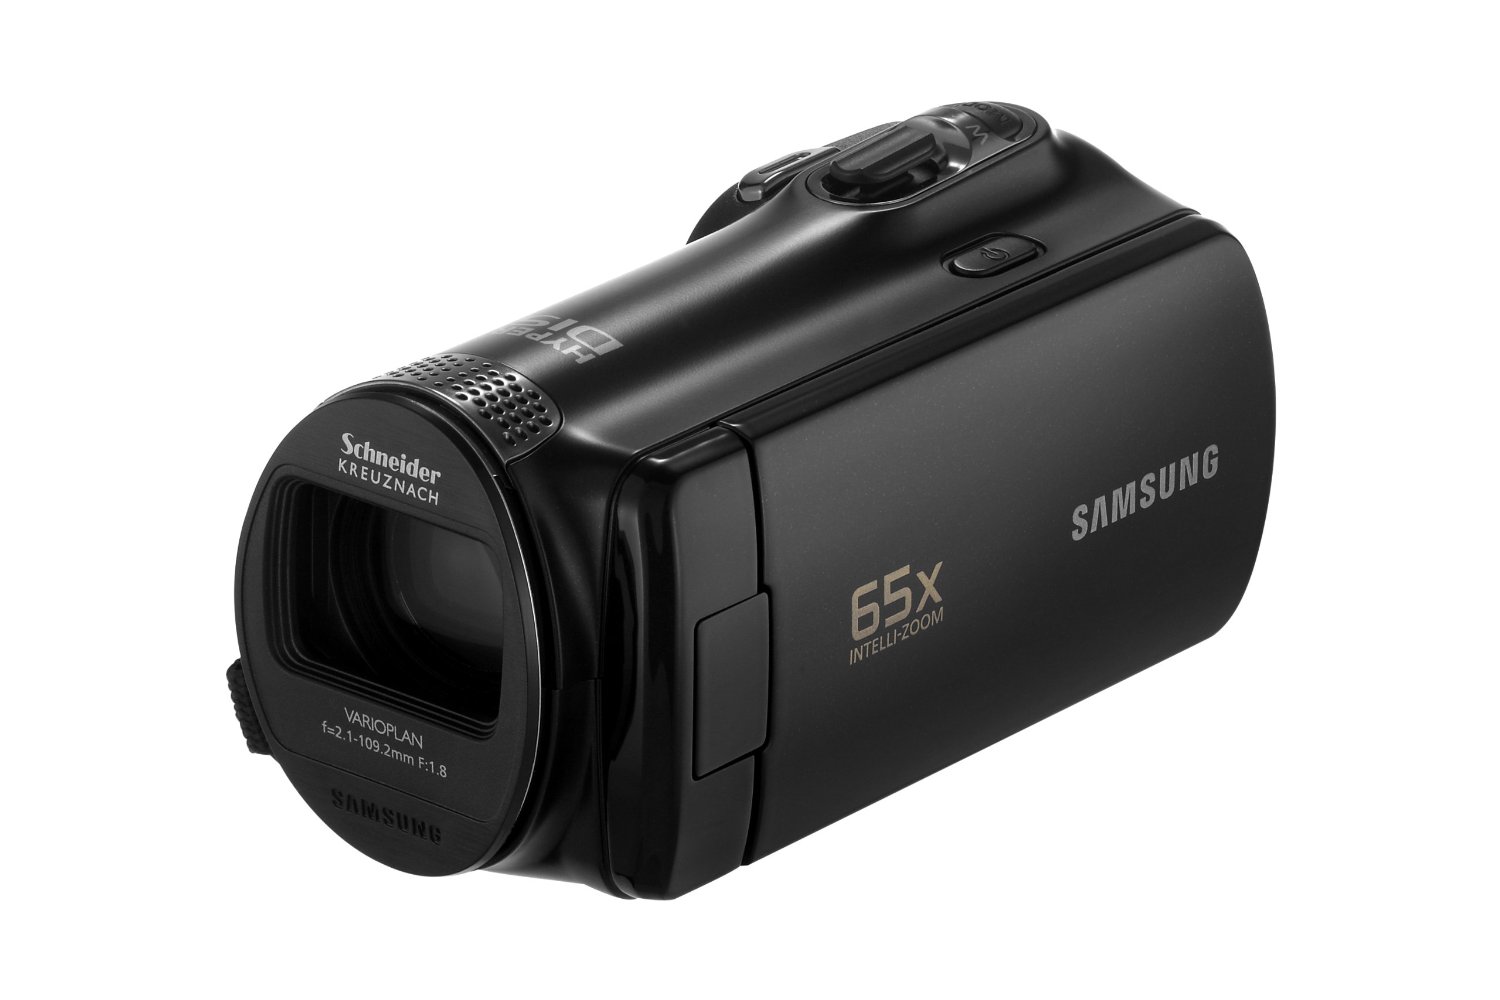 Videocamara Samsung SMX-F50BN (Negro)